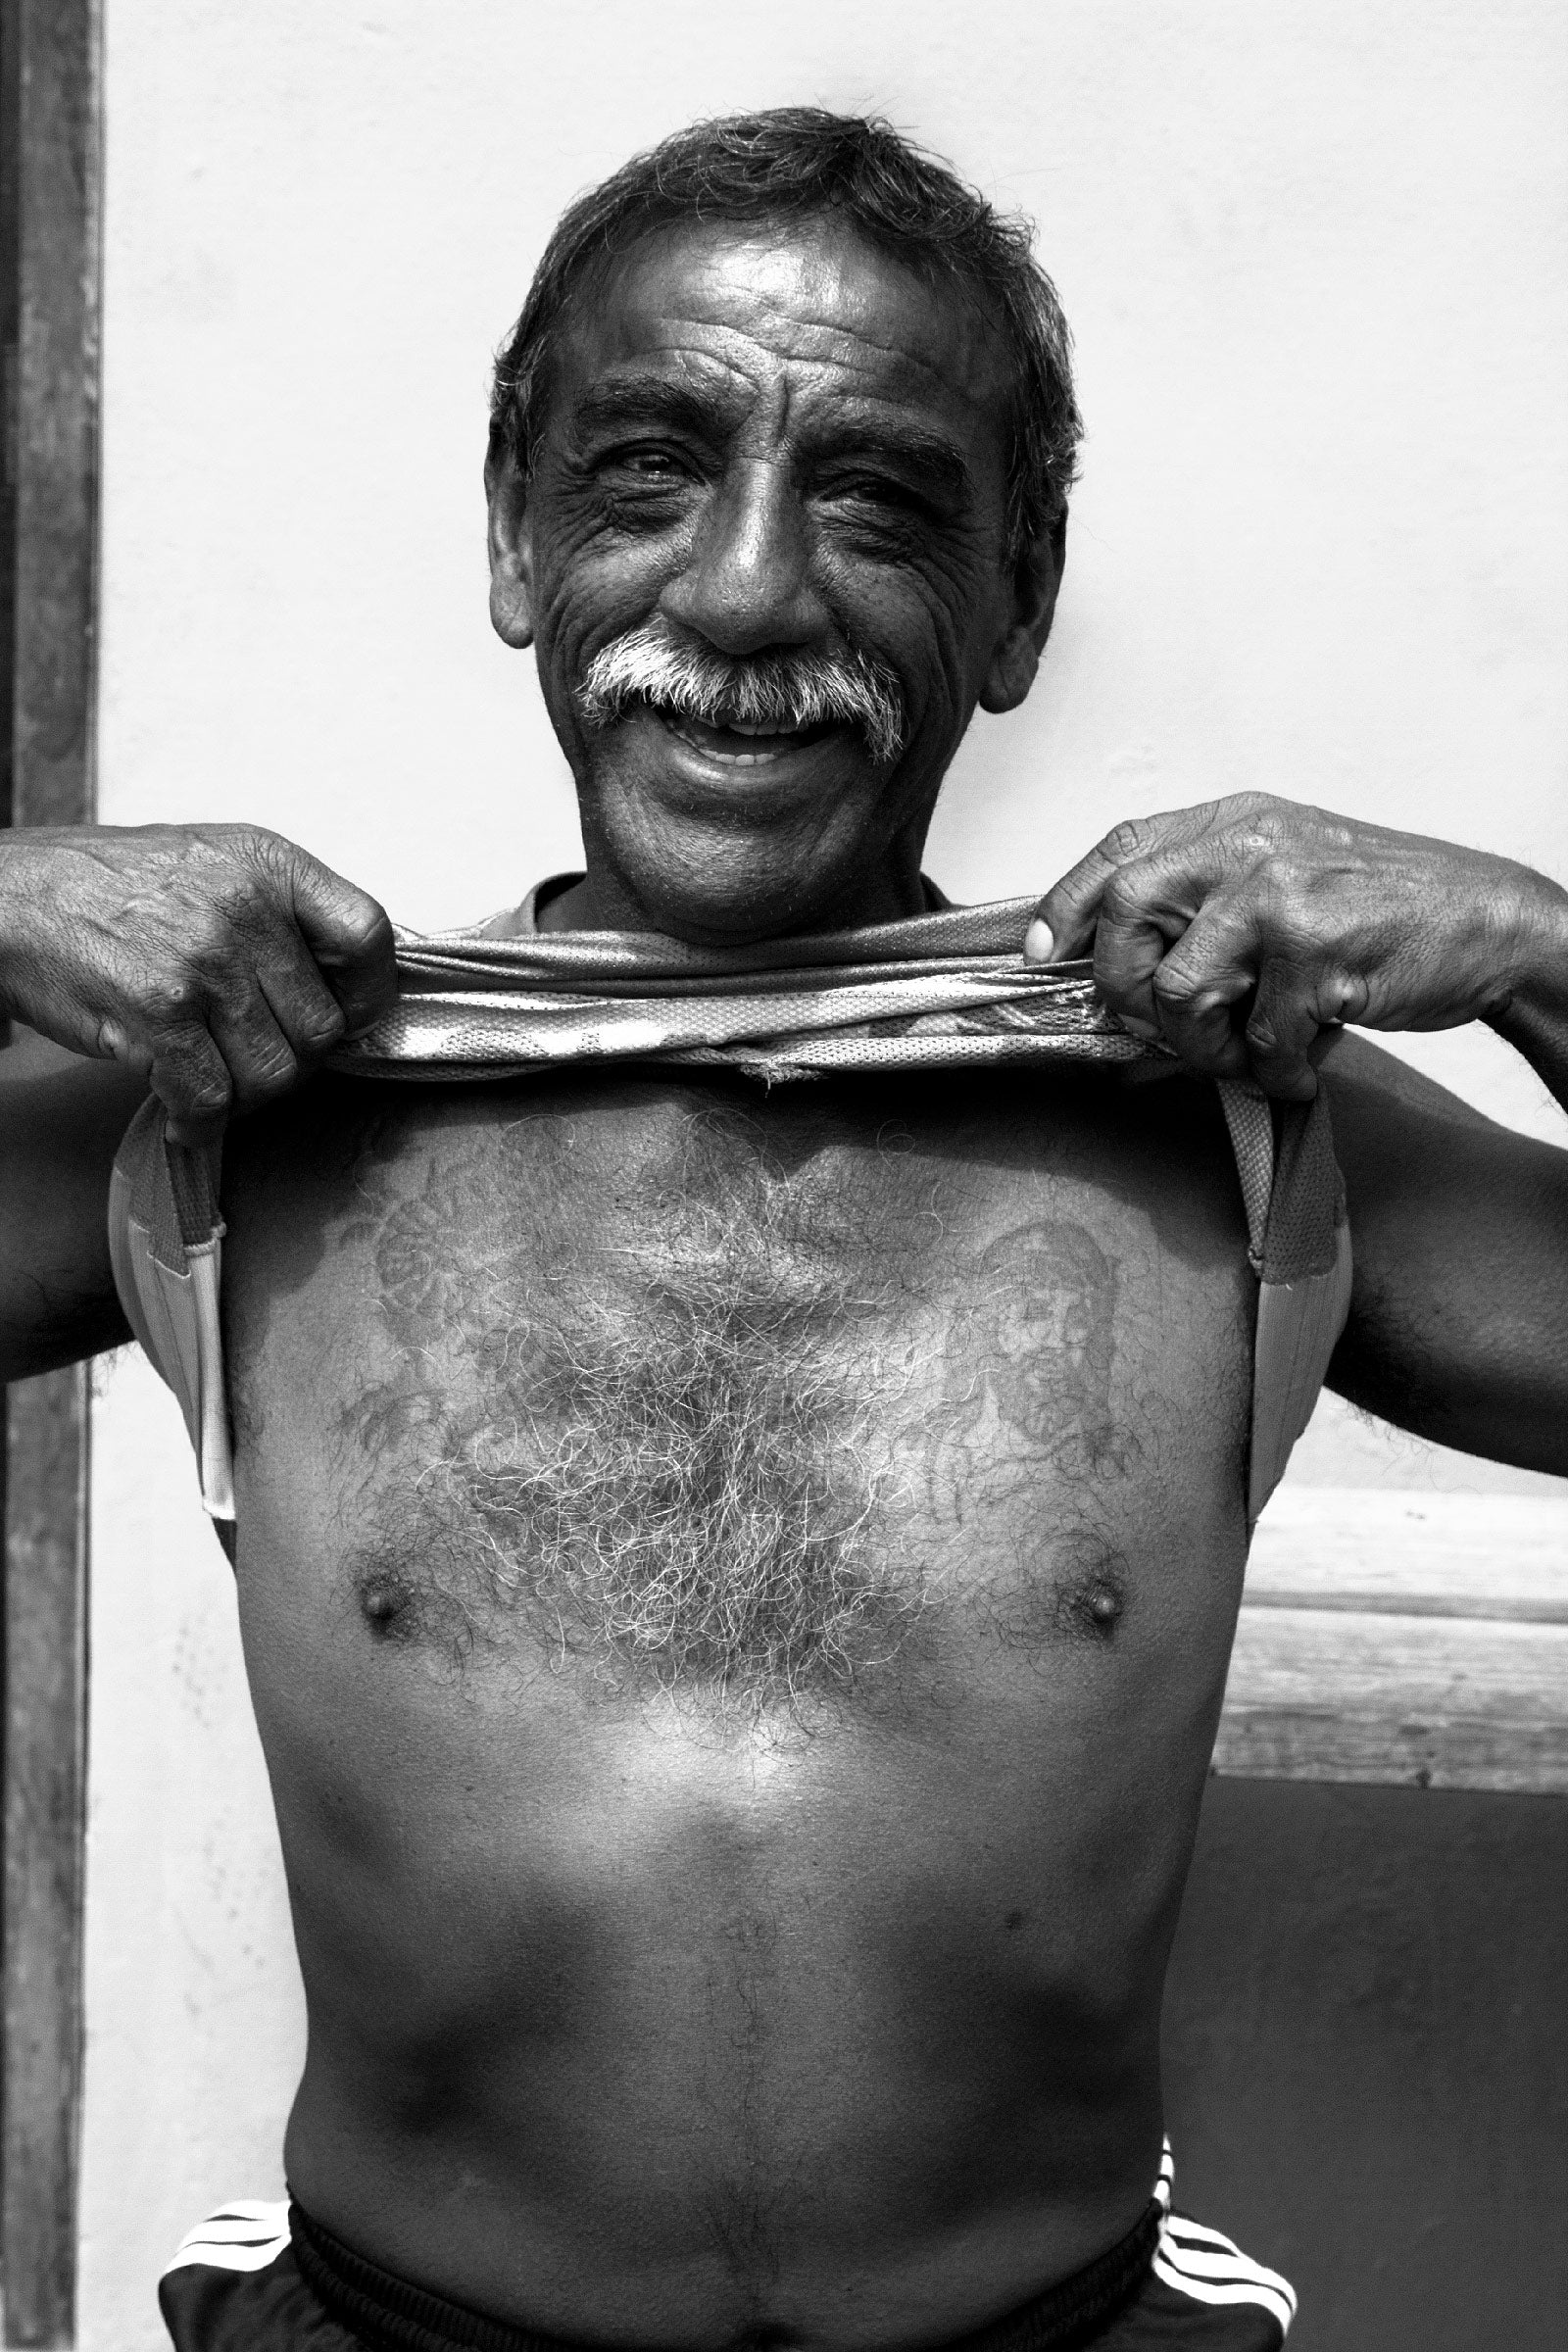 Homme péruvien soulevant son t-shirt pour montrer ses tatouages